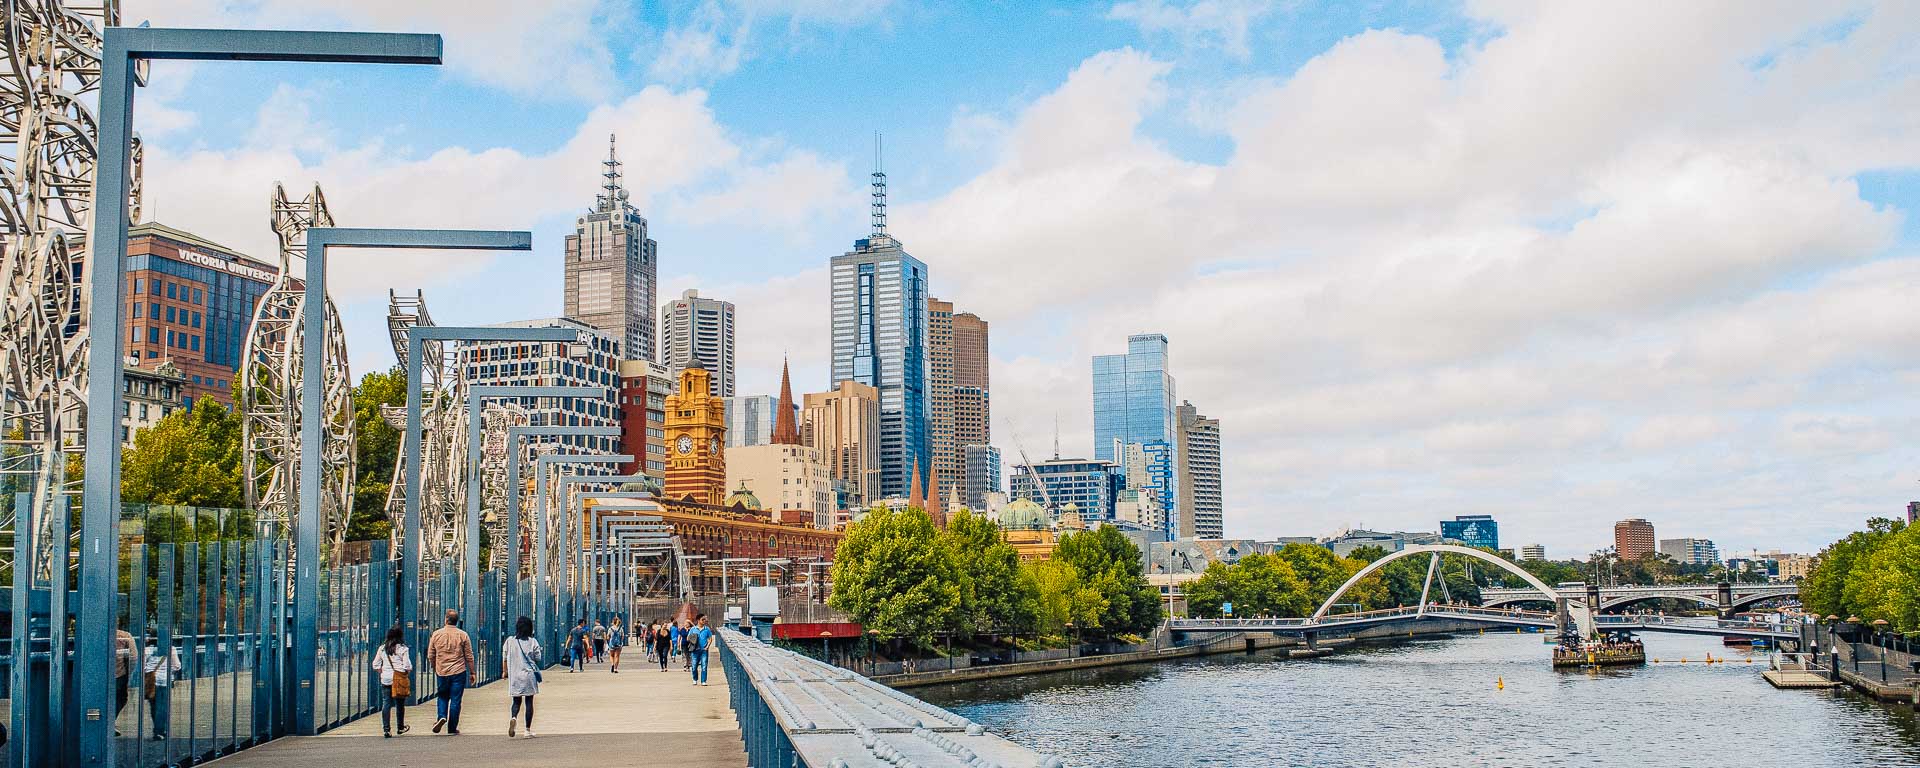 Nên đi du lịch Melbourne vào thời điểm nào trong năm?